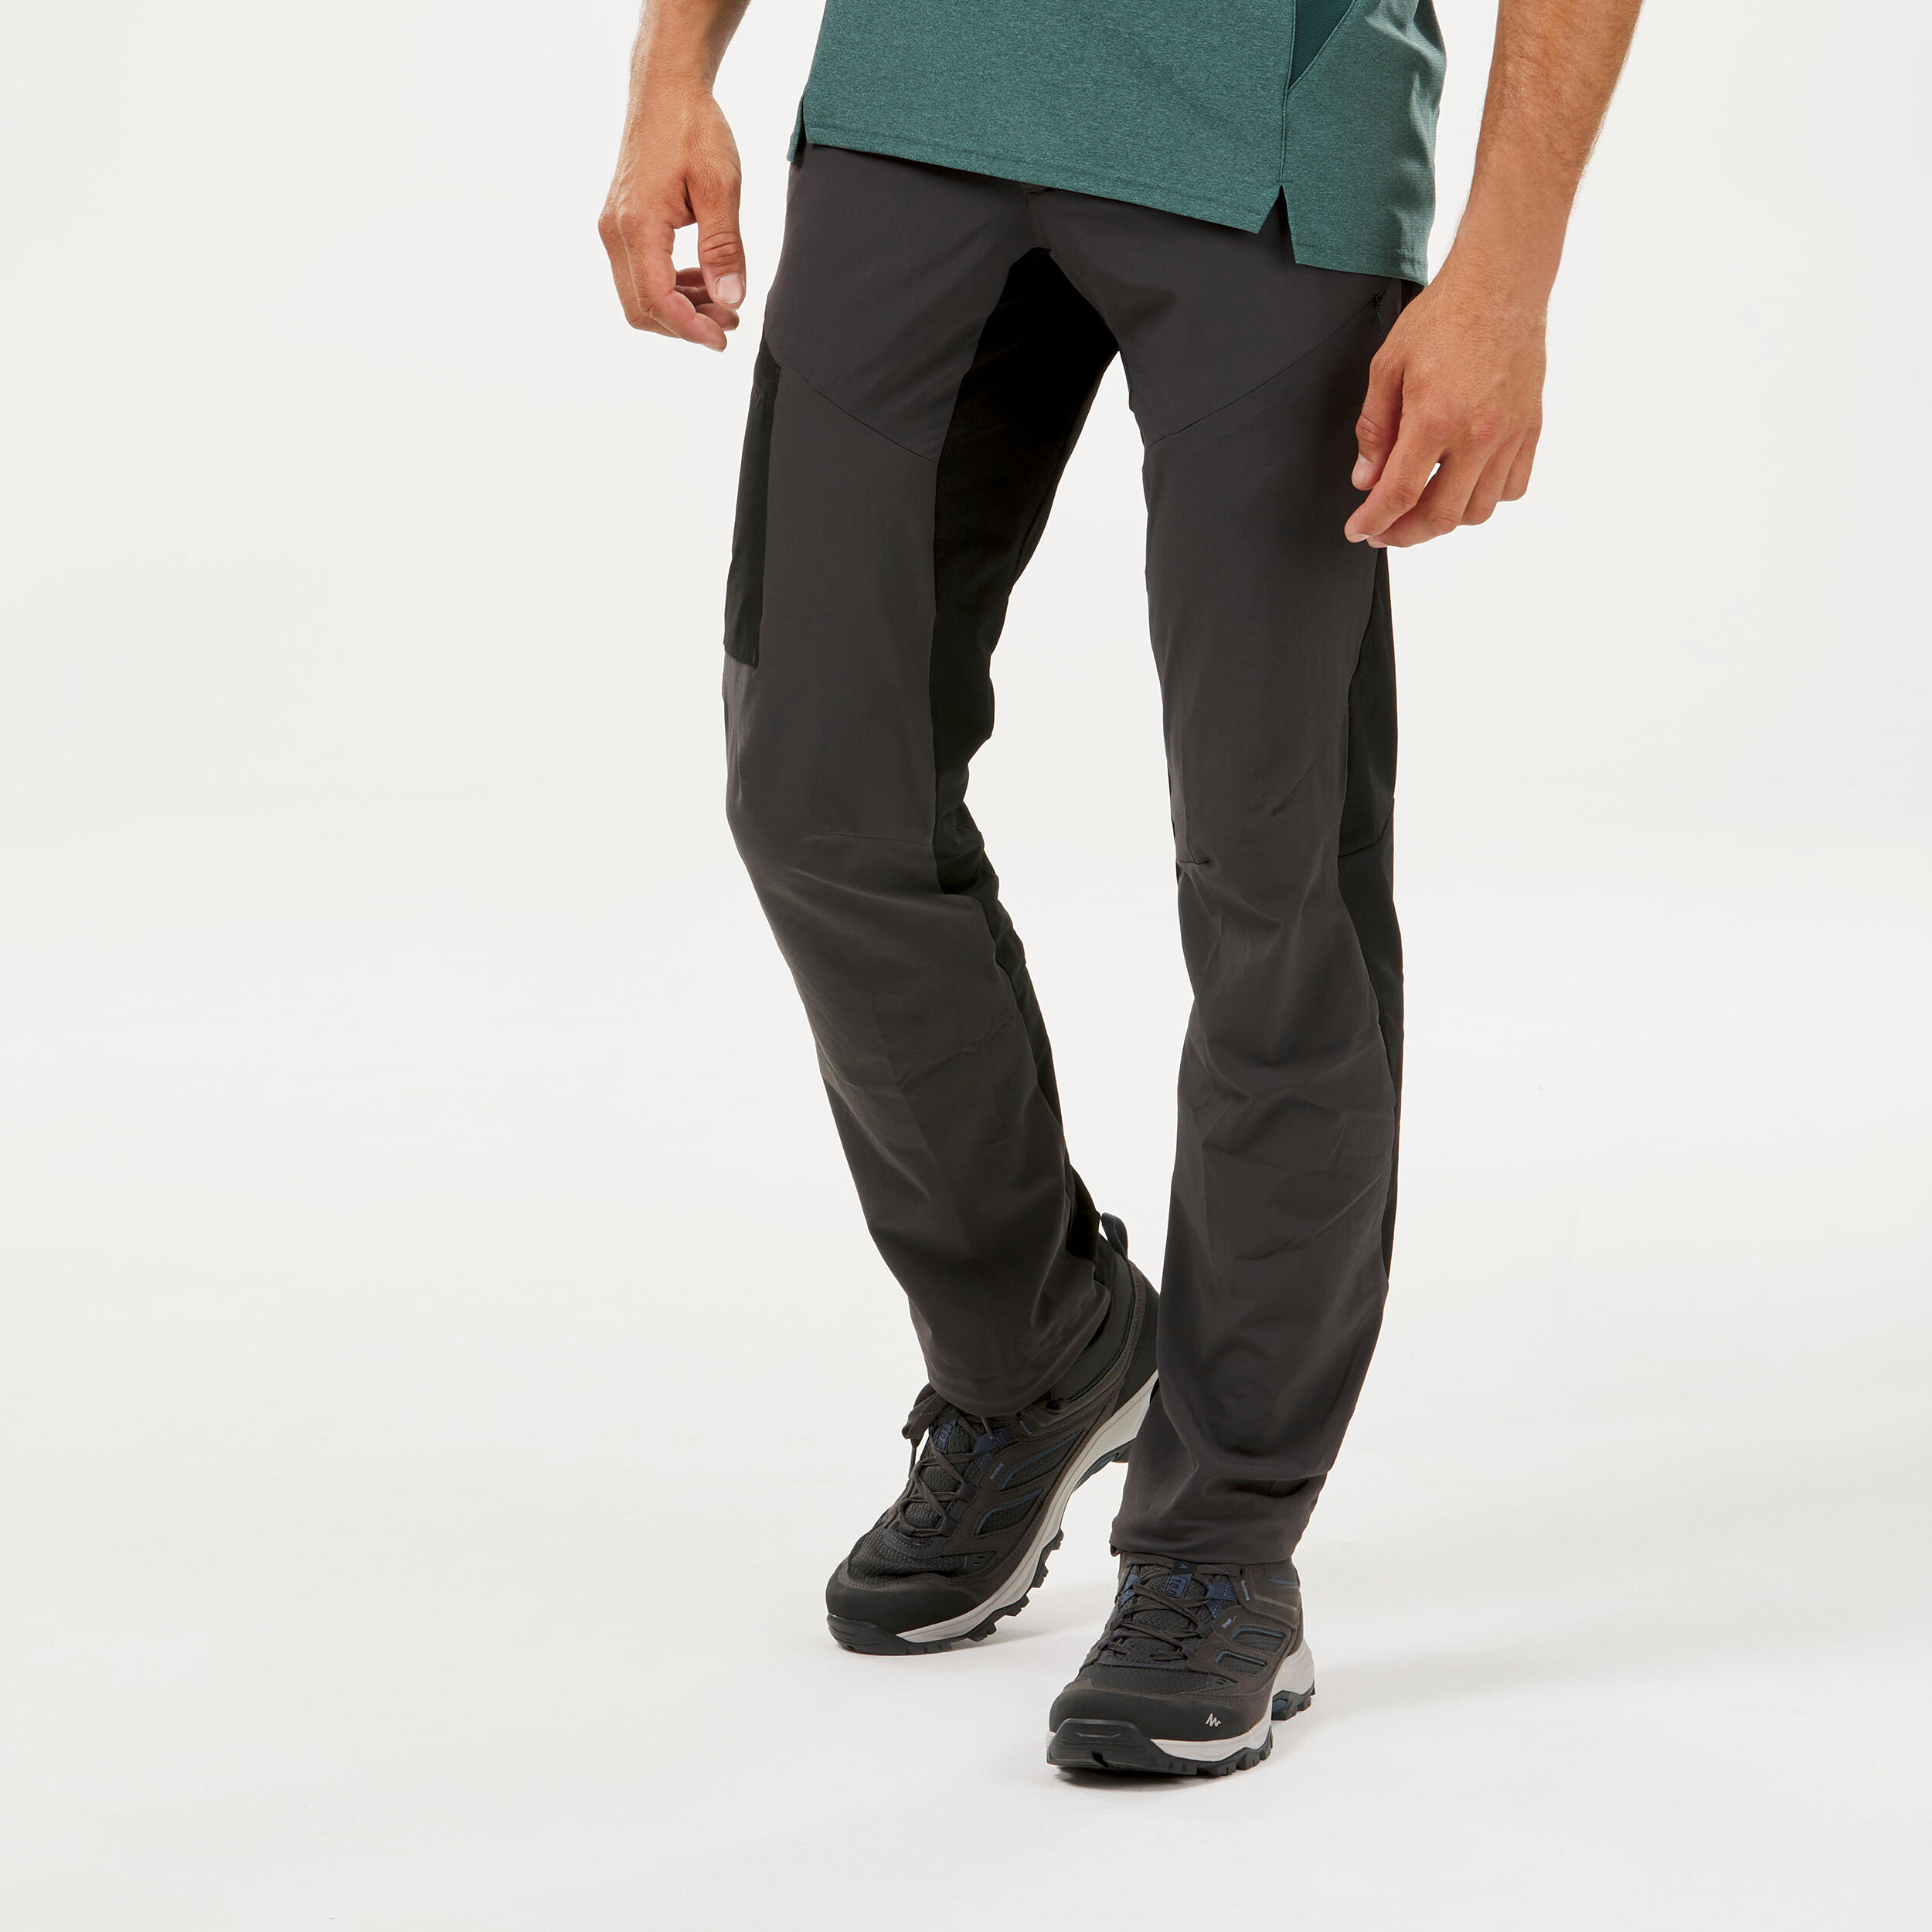 Pantalon de randonnée homme – MH 500 noir/gris - QUECHUA